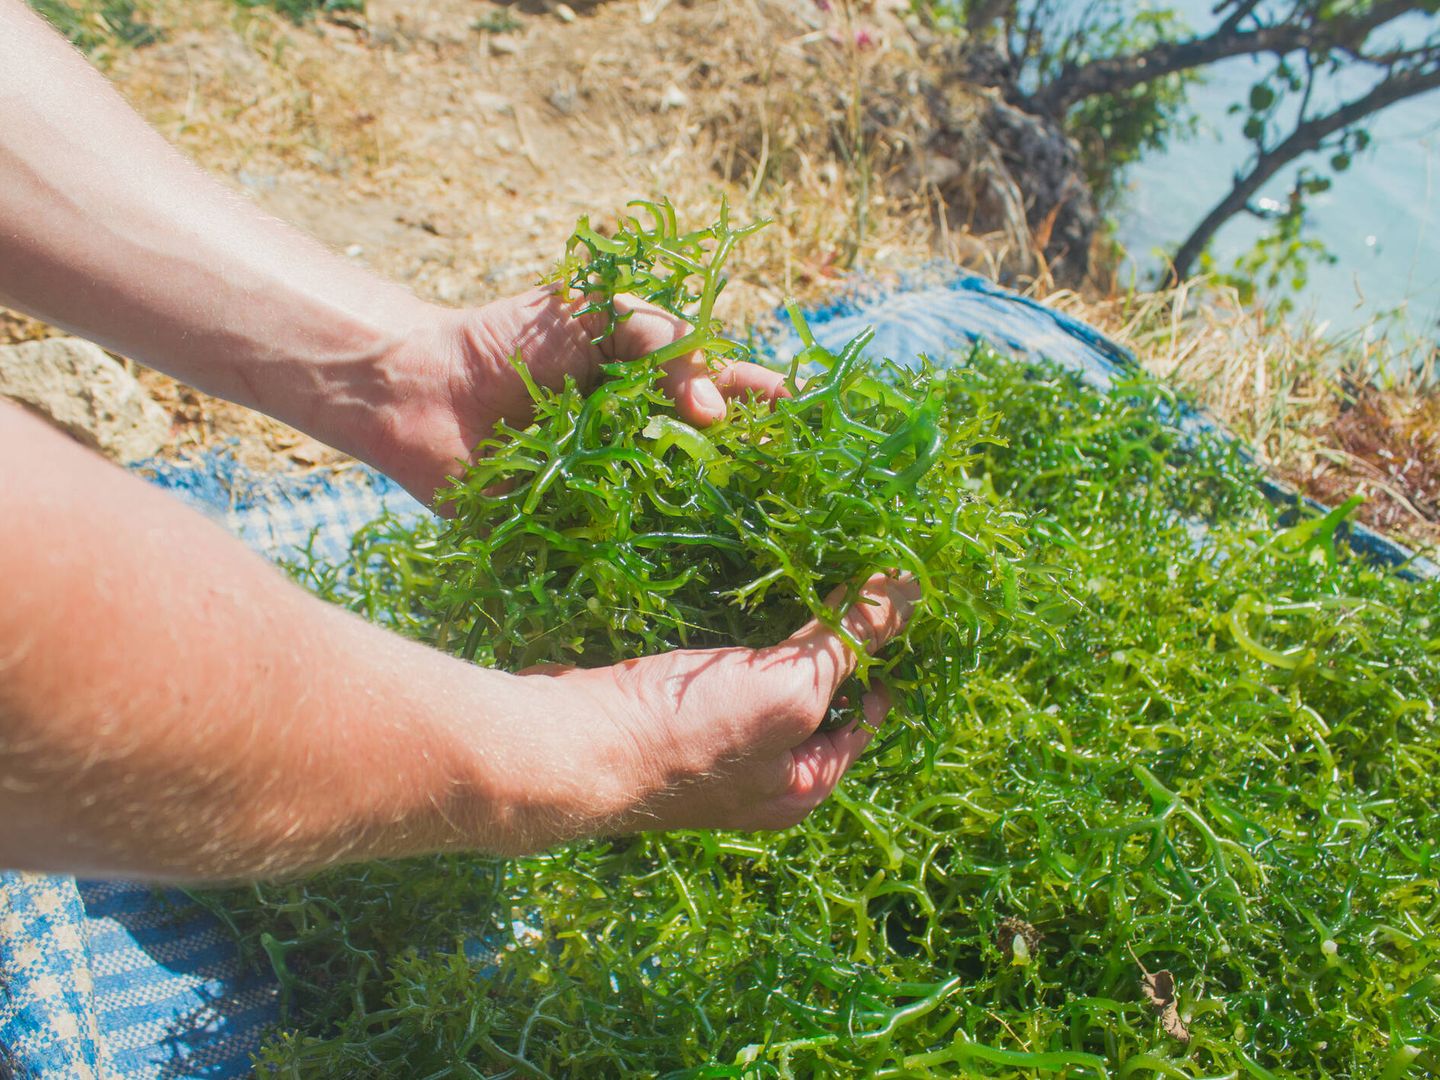 La OMS considera las algas el alimento del futuro por su alto contenido en proteínas. (iStock)